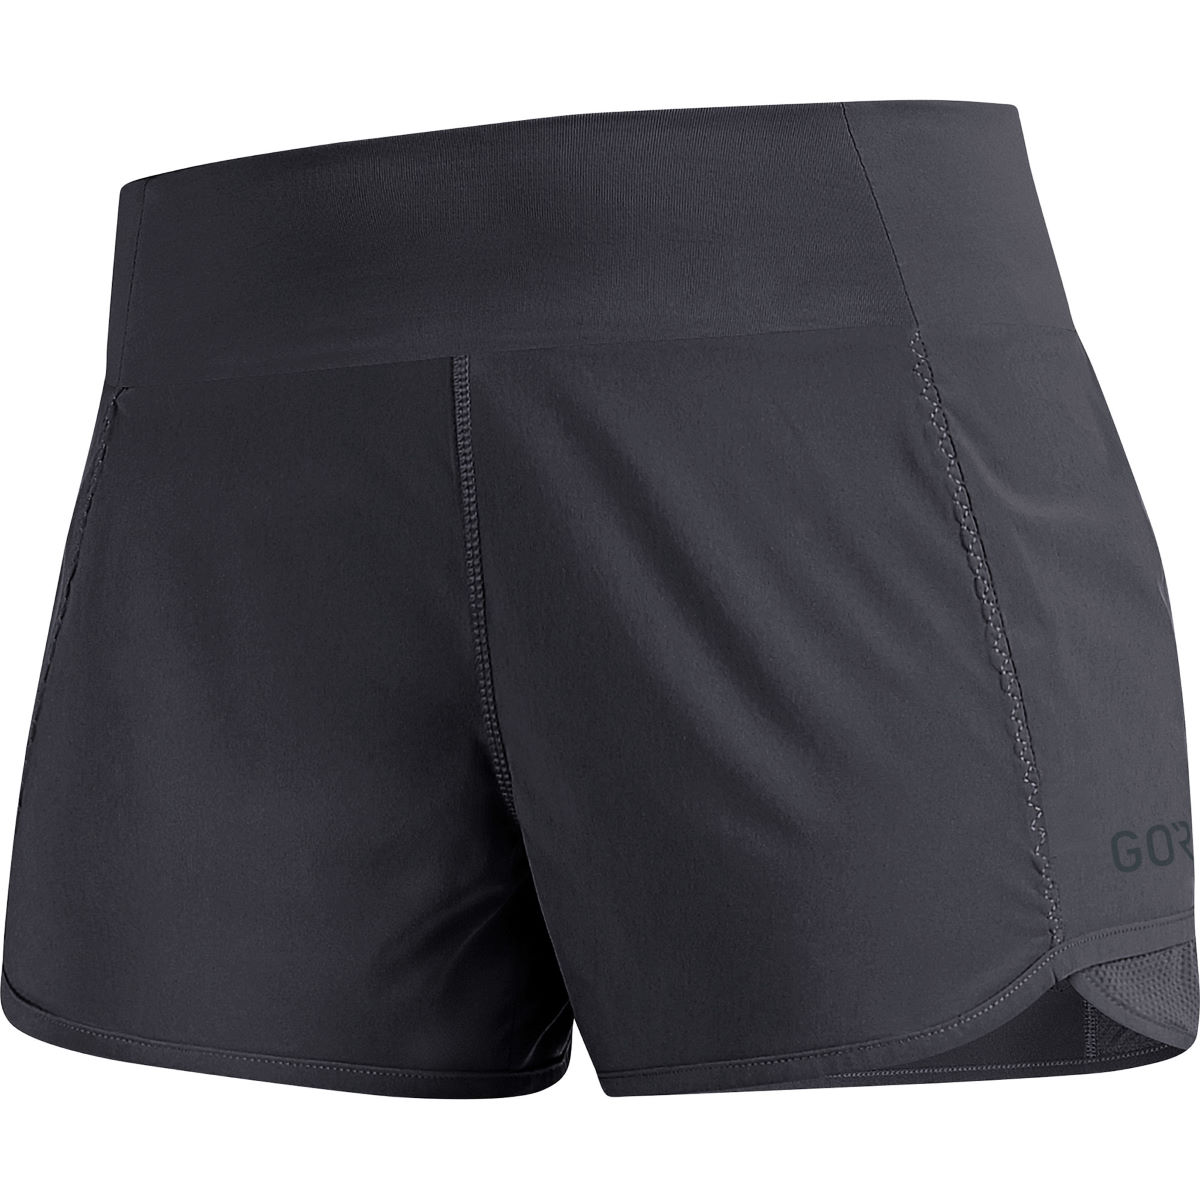 Pantalón corto Gore Wear R5 Light para mujer - Pantalones cortos